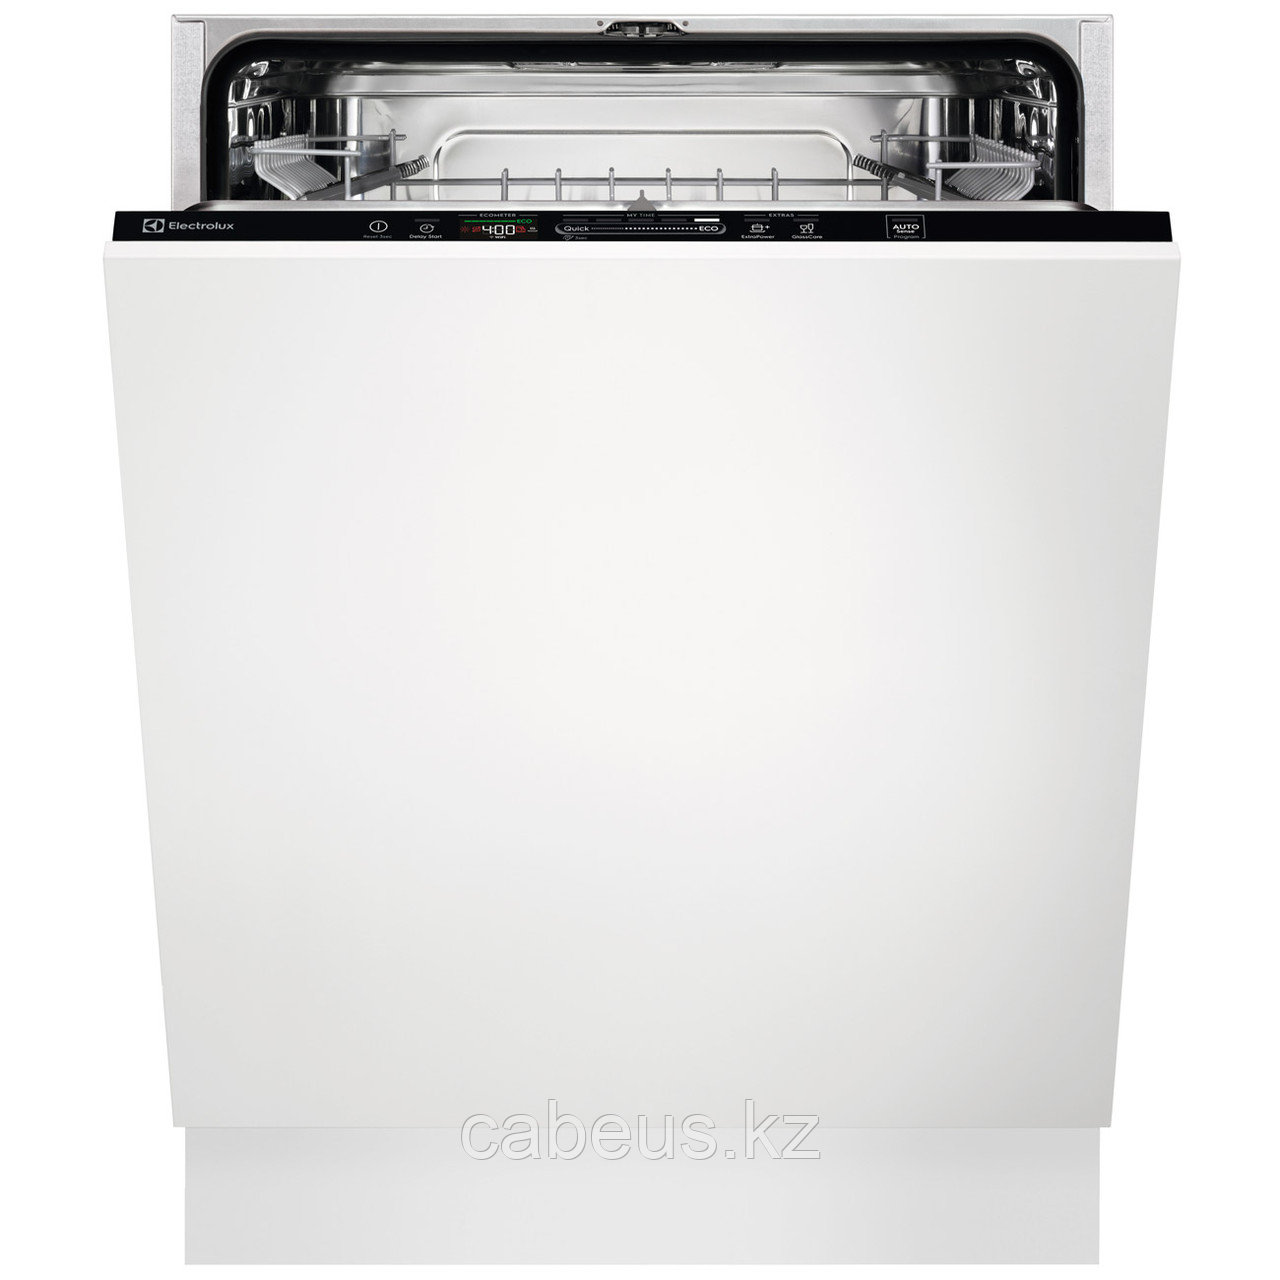 Встраиваемая посудомоечная машина 60 см Electrolux Intuit 600 EMS47320L